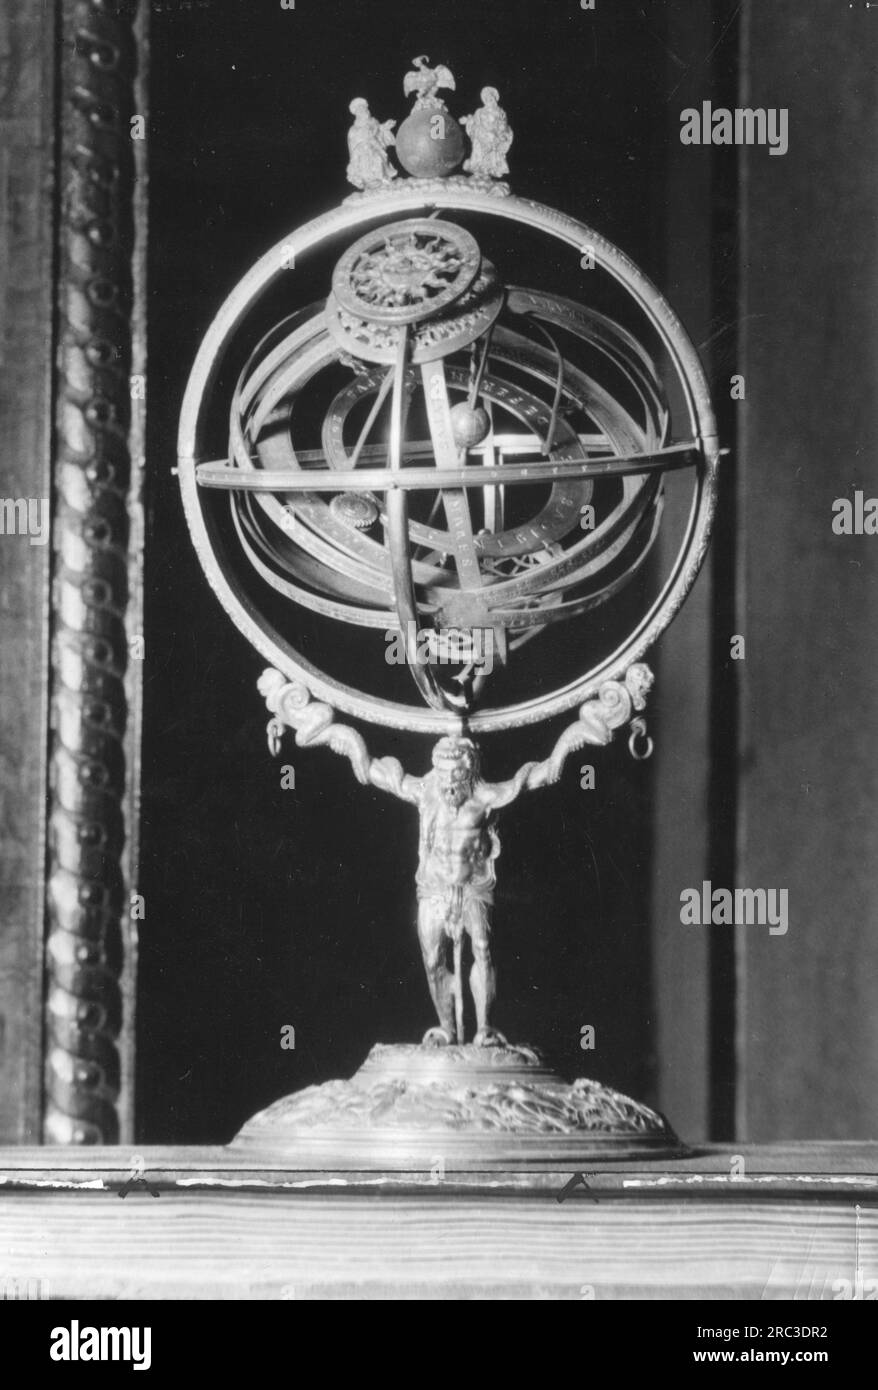 astronomie, instrument de mesure, sphère armillaire, bronze, plaqué or, CIRCA 1569, INFO-AUTORISATION-DROITS-SUPPLÉMENTAIRES-NON-DISPONIBLE Banque D'Images